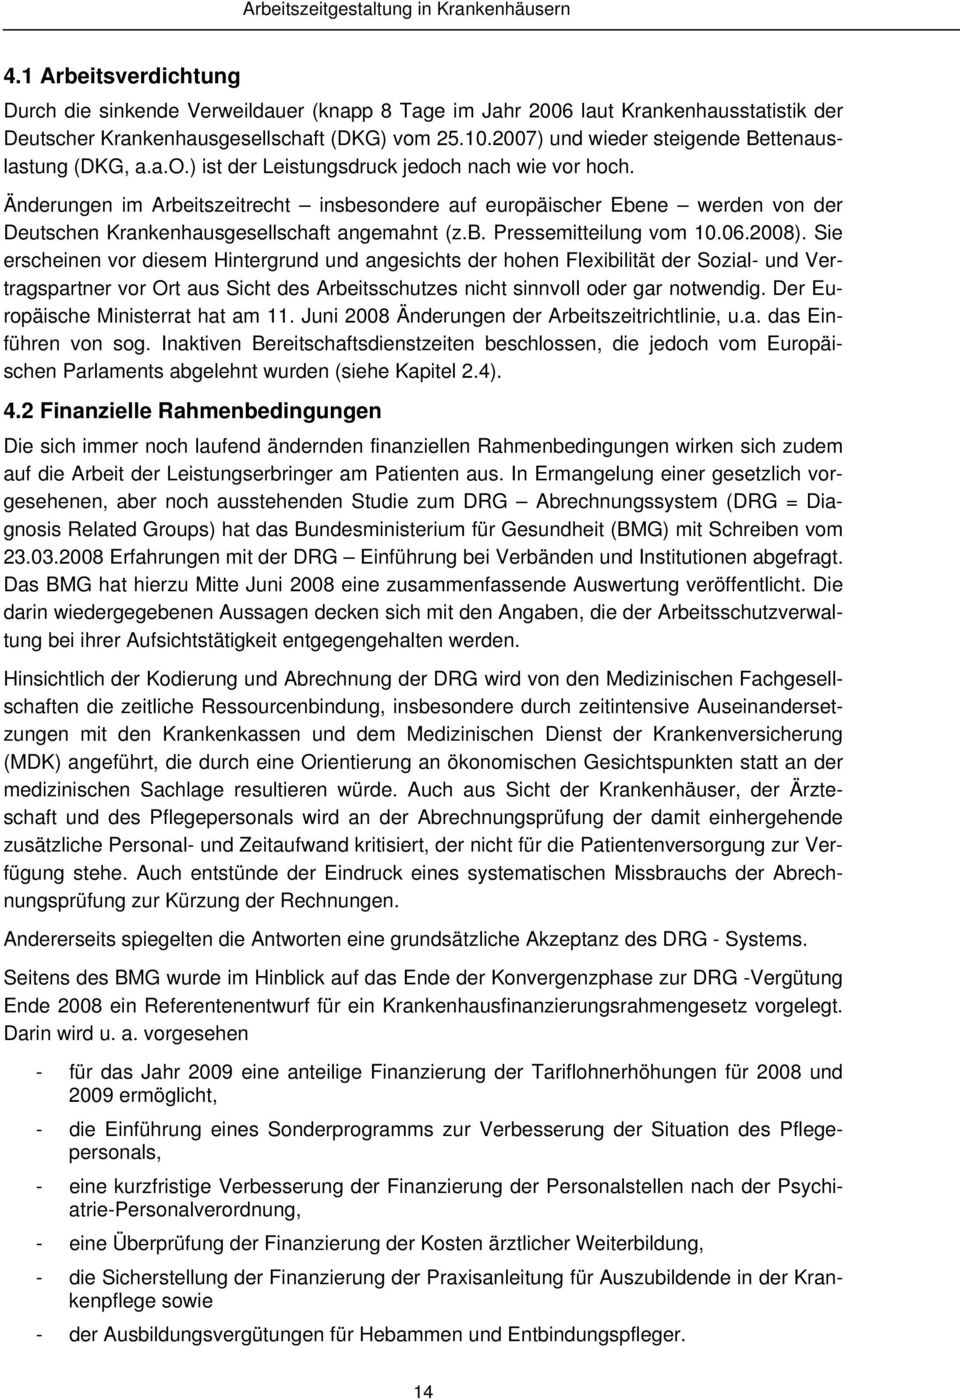 Änderungen im Arbeitszeitrecht insbesondere auf europäischer Ebene werden von der Deutschen Krankenhausgesellschaft angemahnt (z.b. Pressemitteilung vom 10.06.2008).